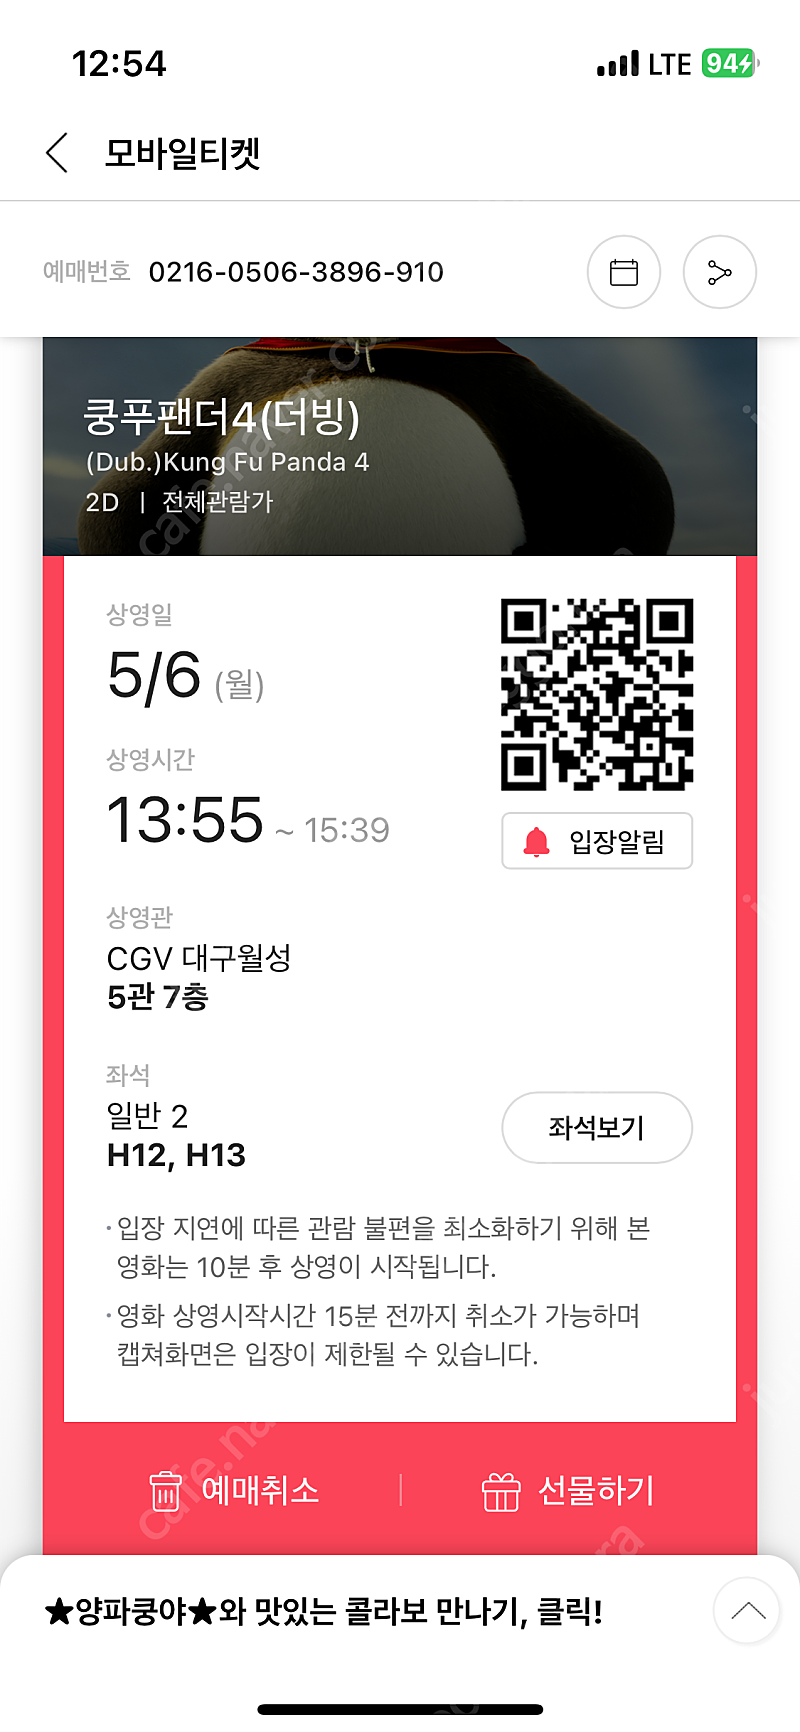 CGV 관람권 장당 7천원